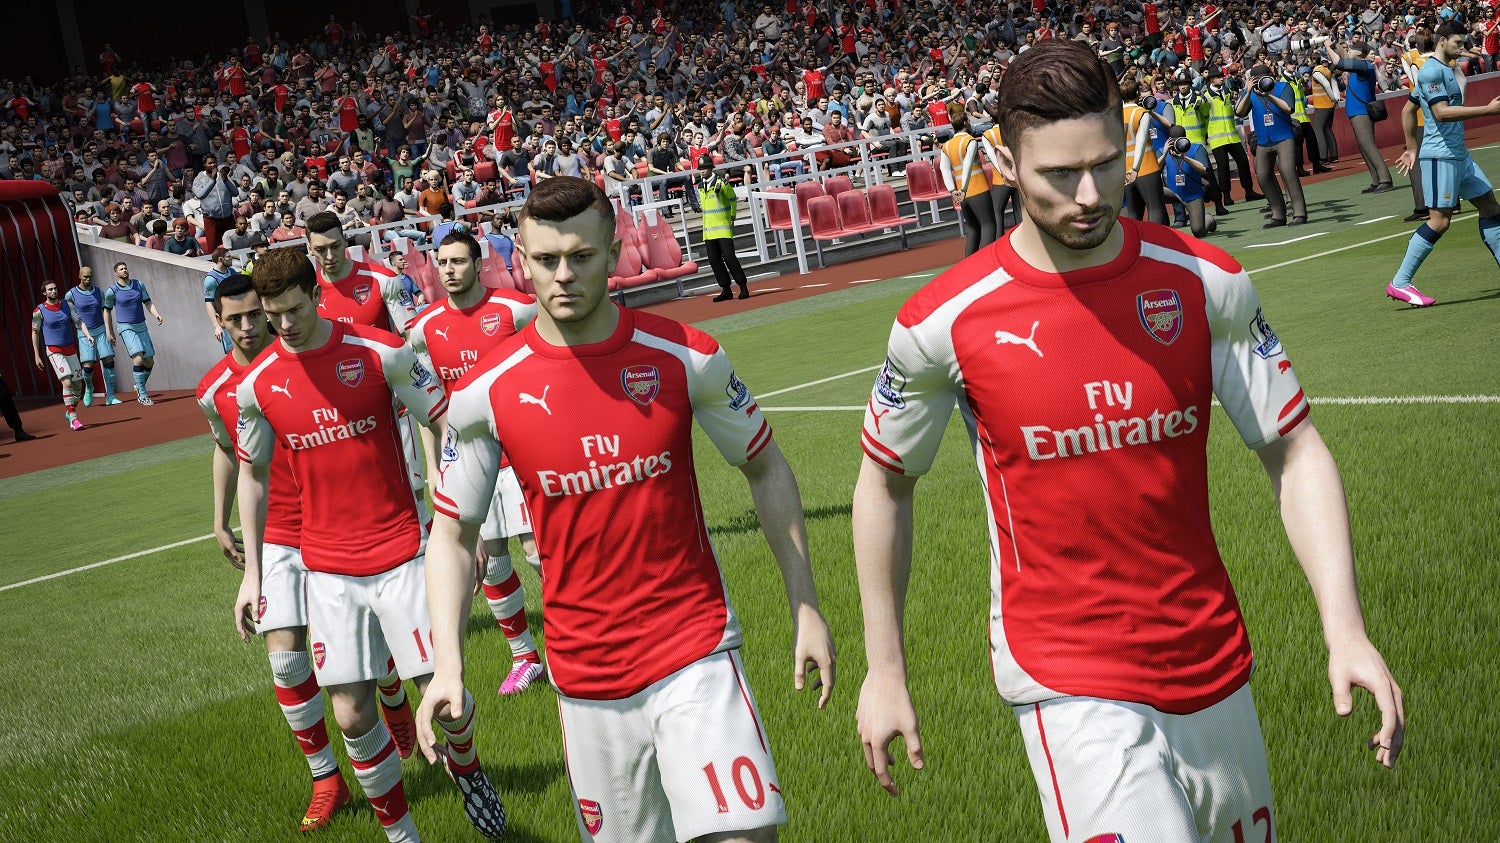 Obrazki dla Sprzedaż gier: FIFA 15 wraca na pierwsze miejsce w Wielkiej Brytanii